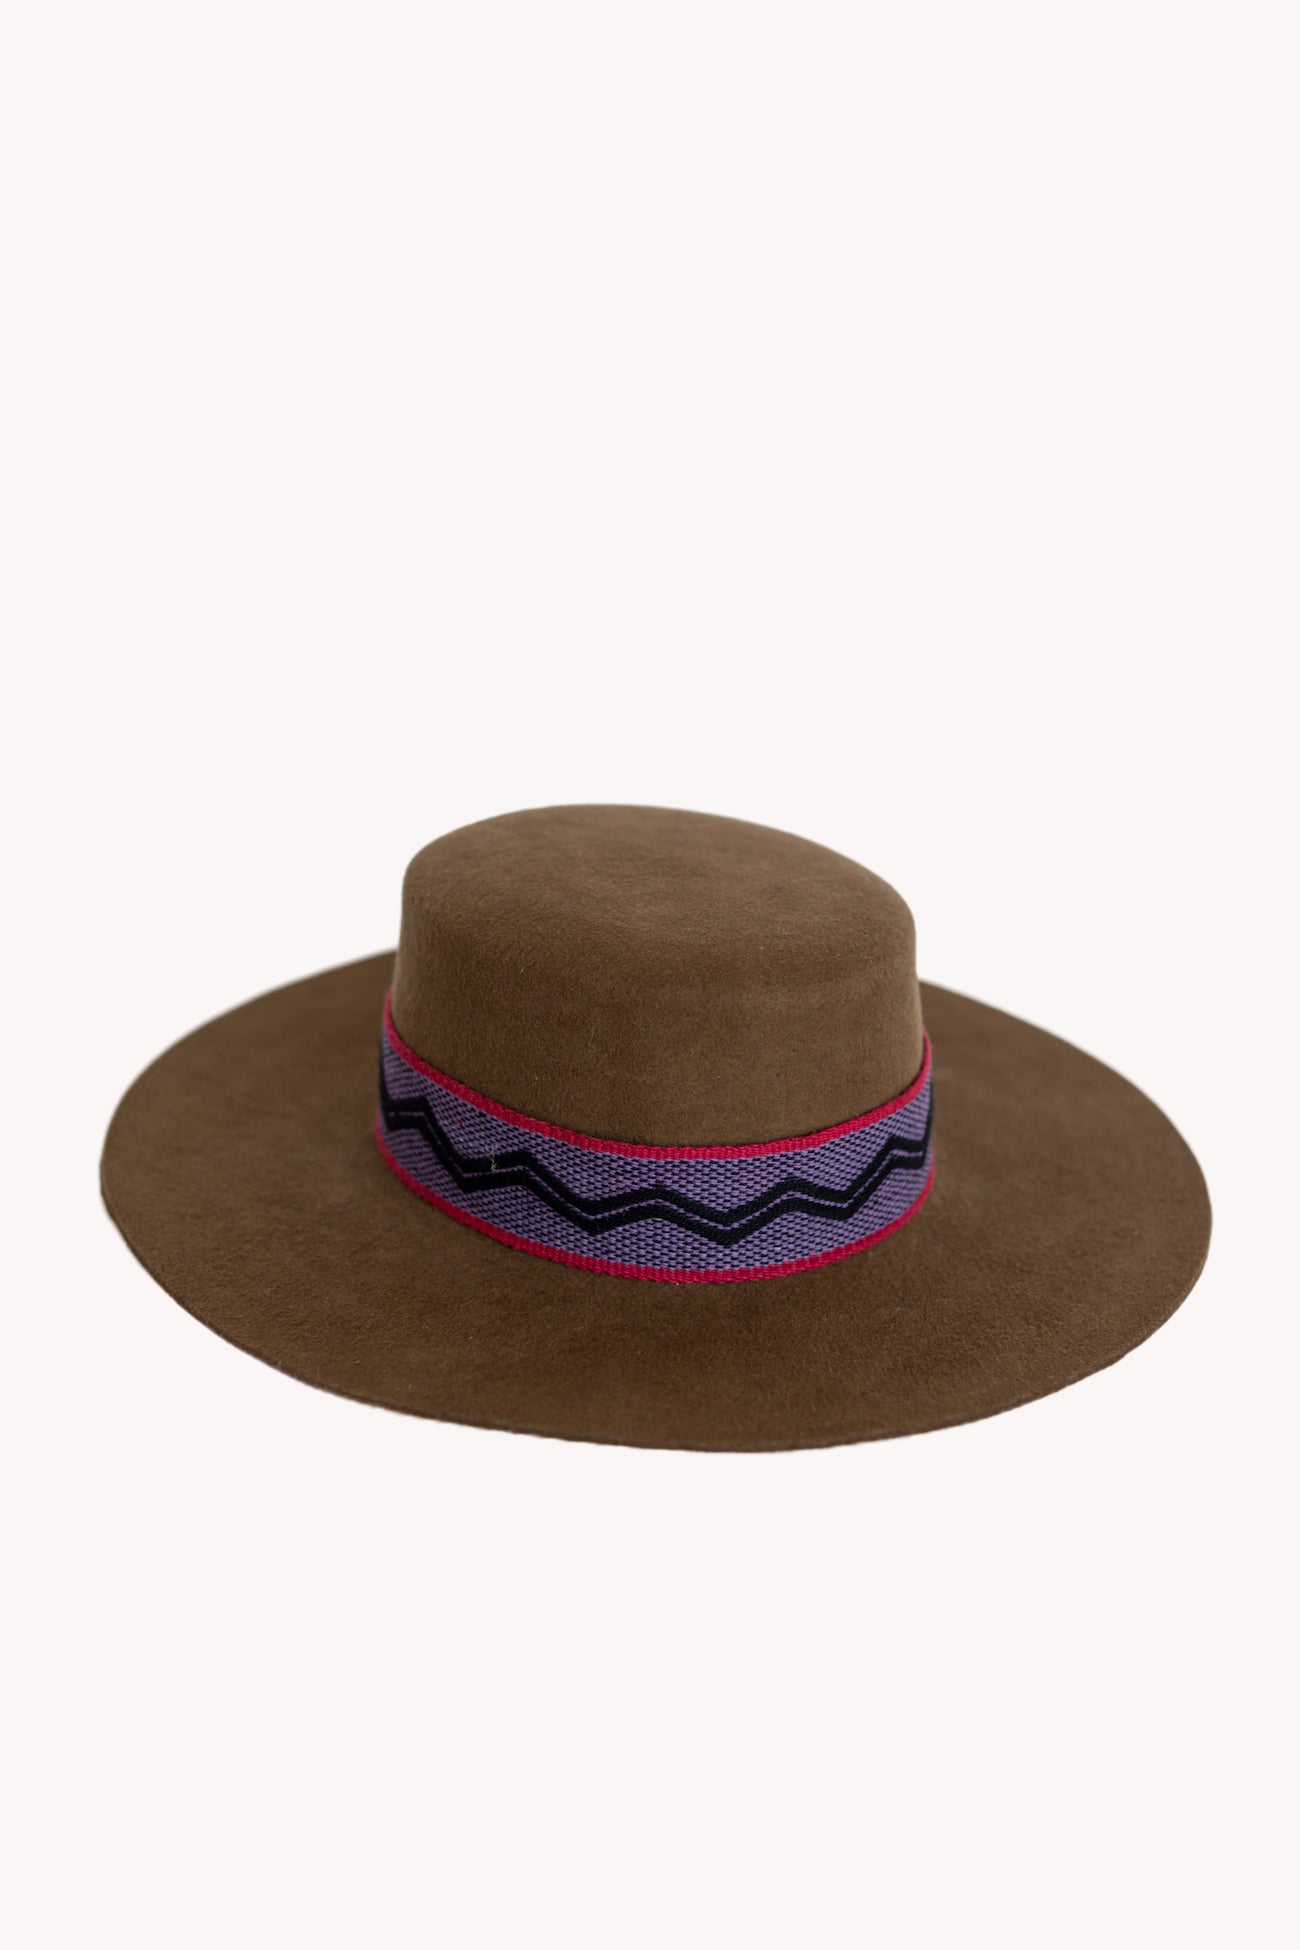 Brown Spanish style peruvian hat